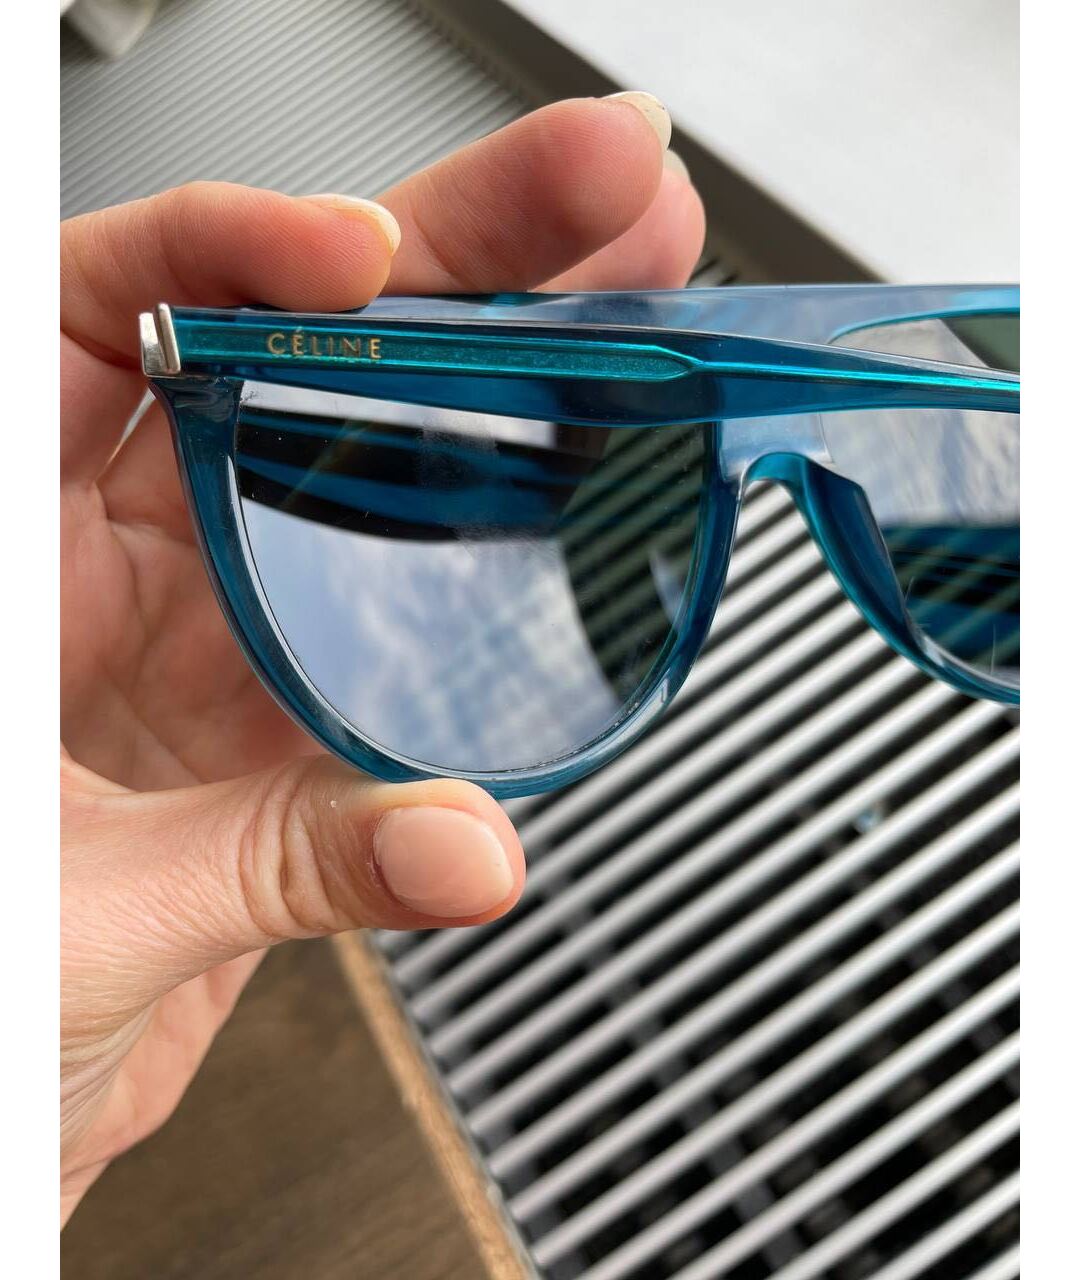 CELINE PRE-OWNED Голубые пластиковые солнцезащитные очки, фото 3